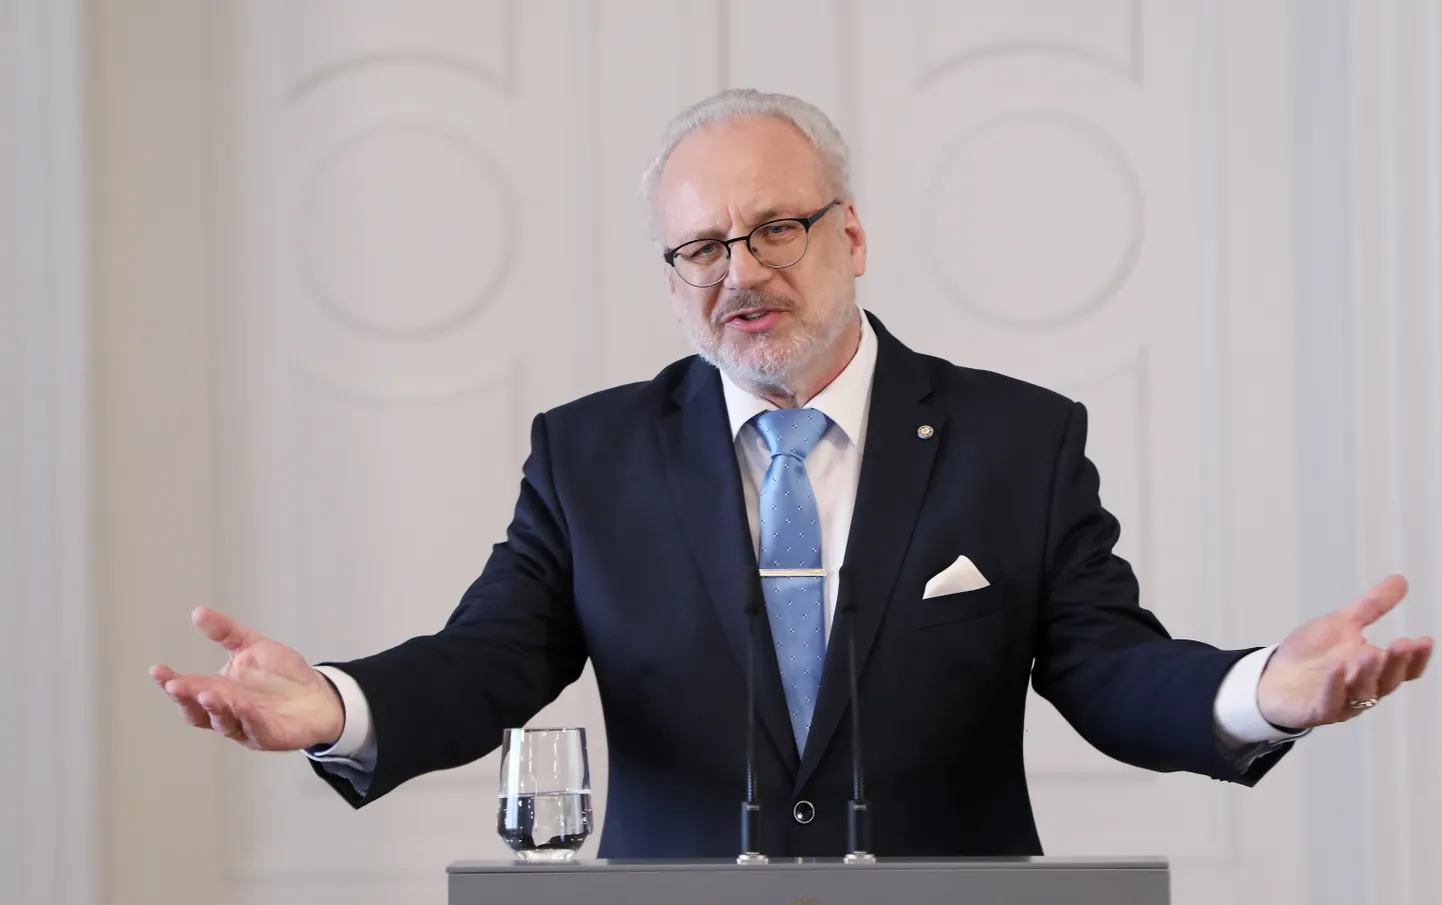 Valsts prezidents Egils Levits preses konferencē Rīgas pilī informē par aizvadīto prezidentūras pirmo gadu.